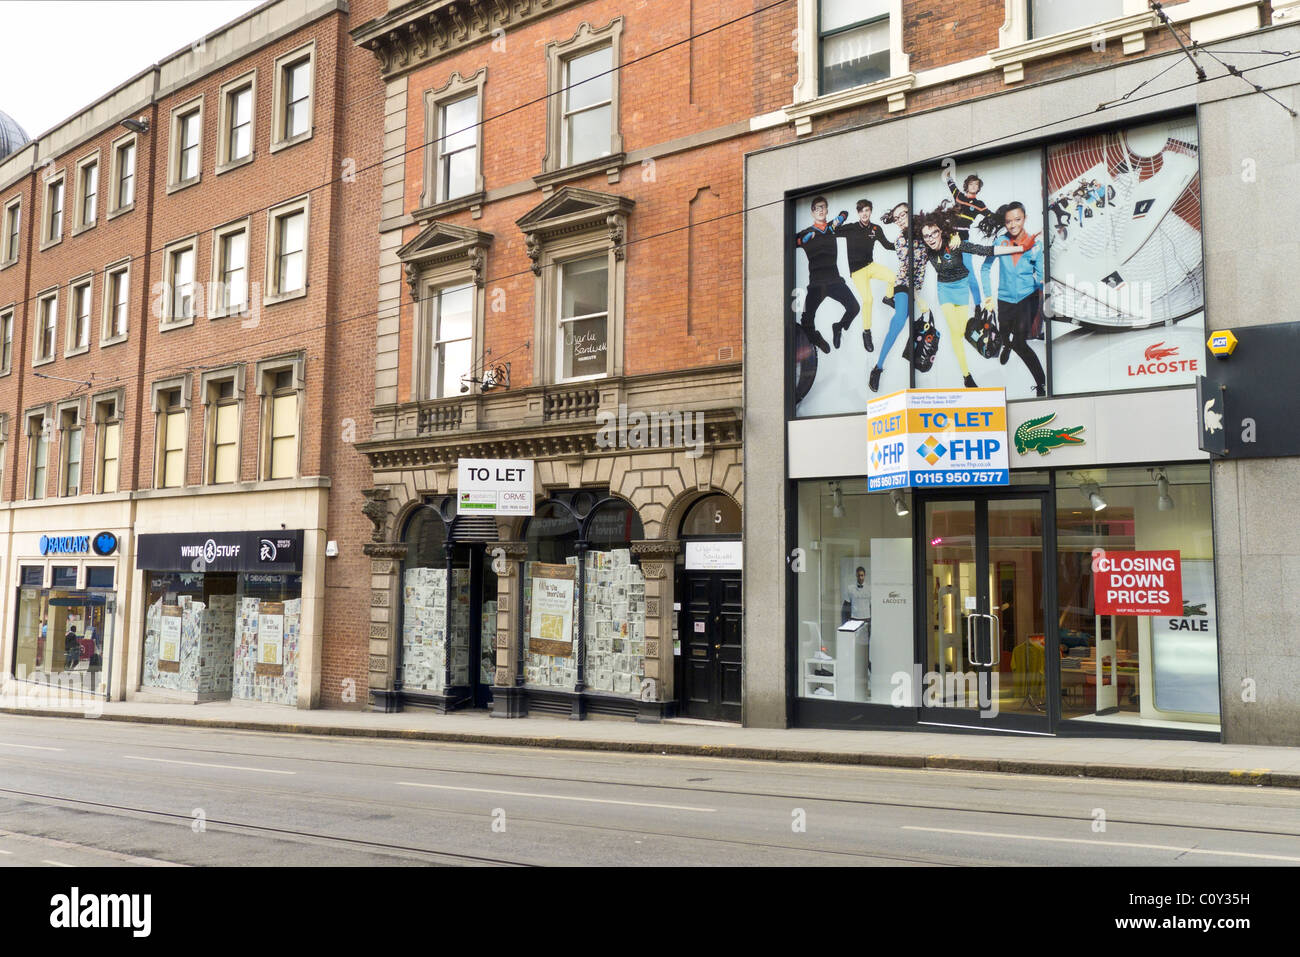 Nottingham Geschäfte geschlossen im März 2011 während der Wirtschaftskrise zu lassen. Beschilderung für weißes Material Bekleidung. Zeitungen unter Windows Stockfoto